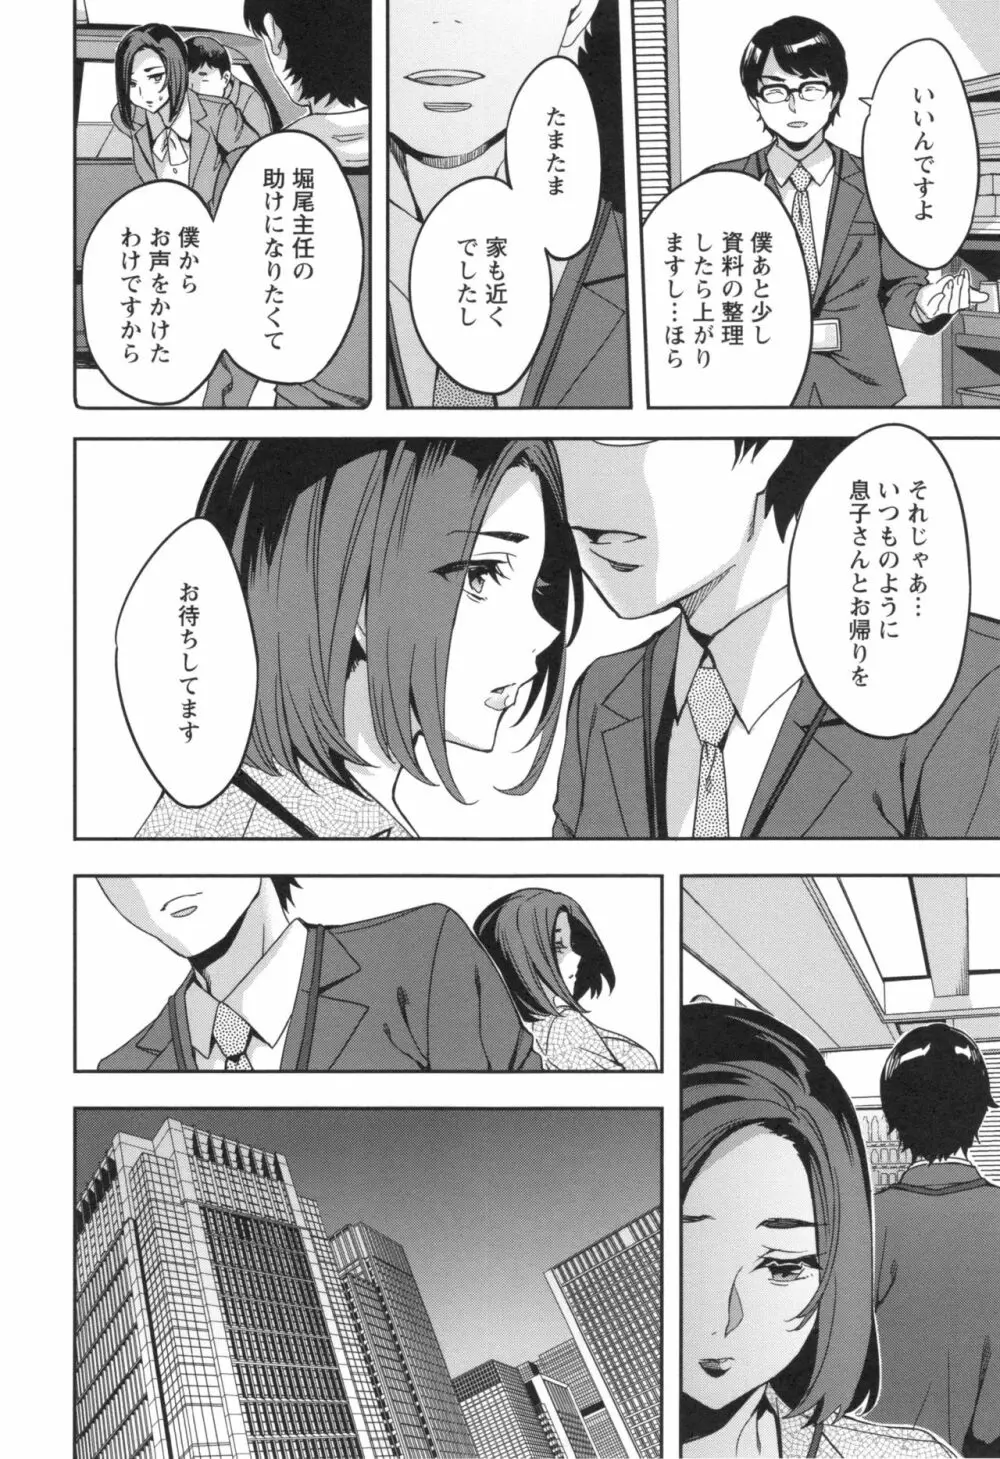 関ヶ原商事人妻部 + とらのあなリーフレット 69ページ